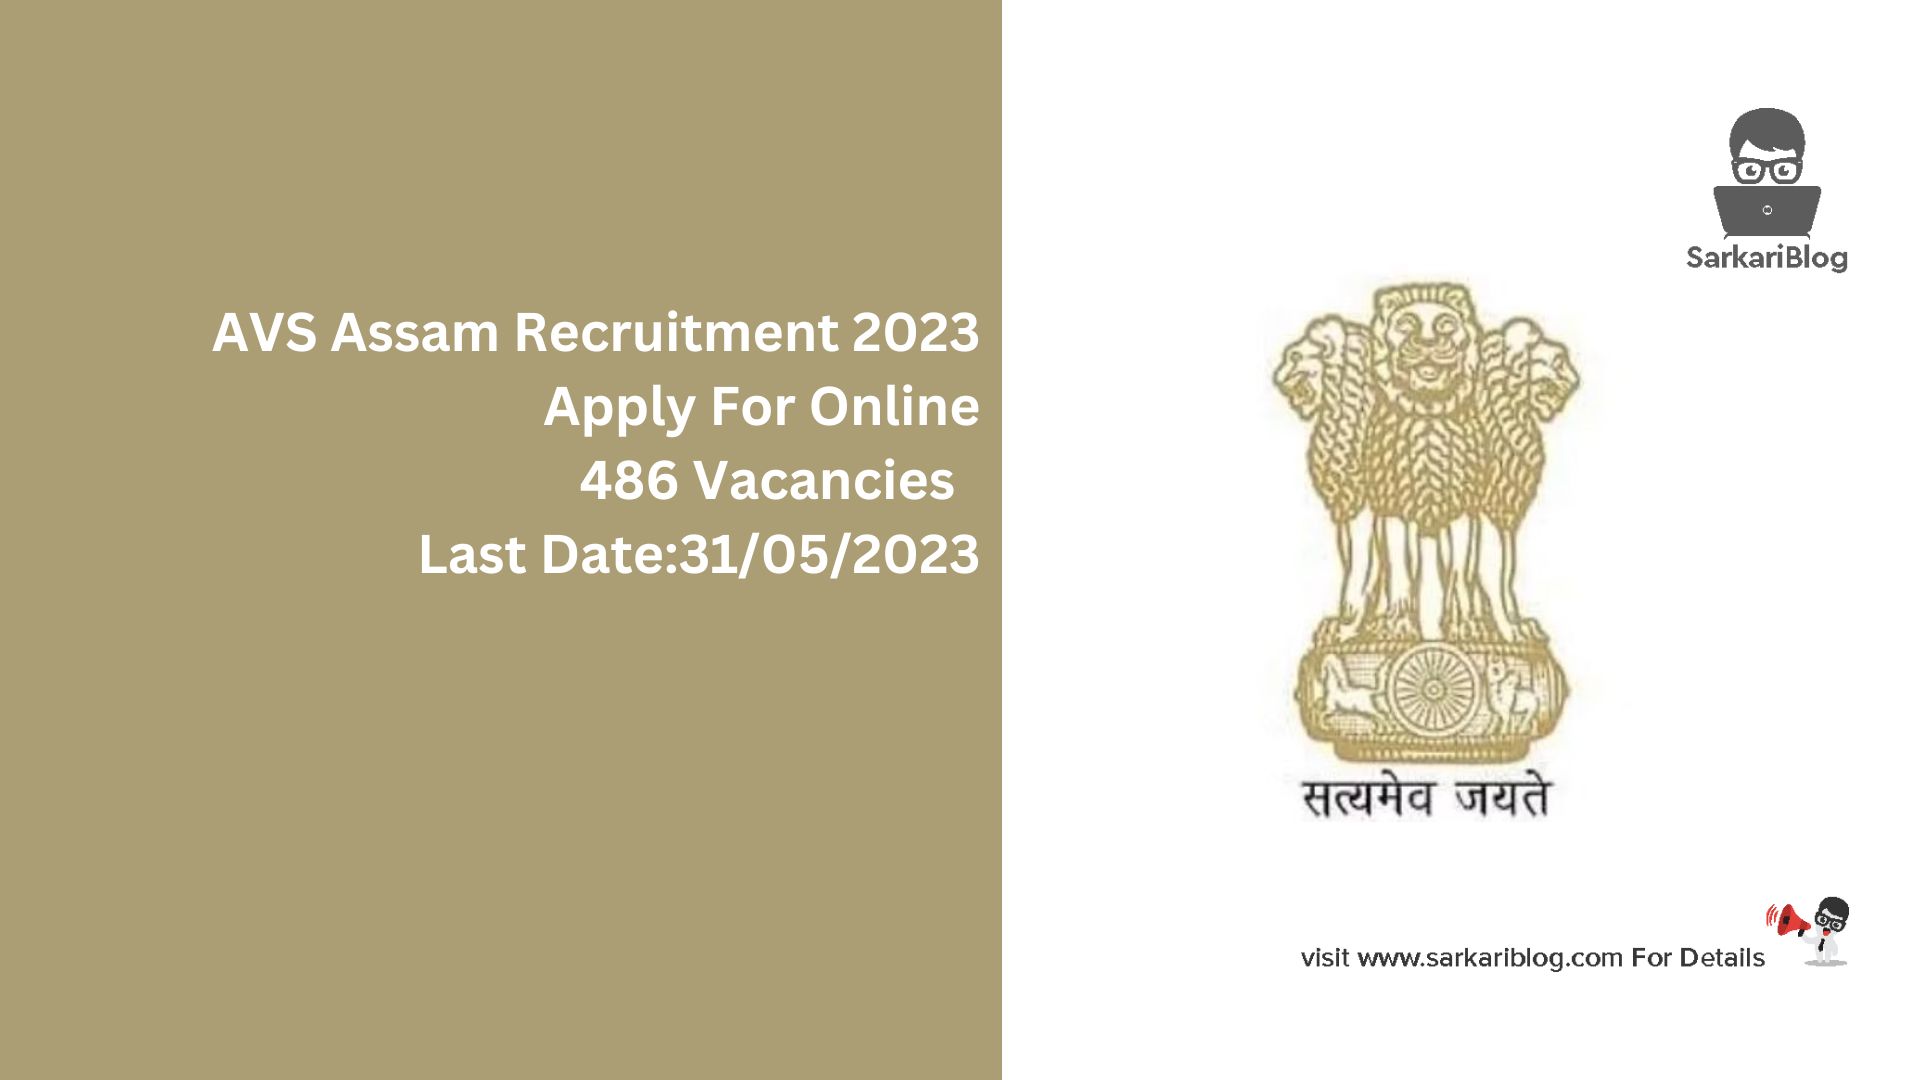 AVS Assam Recruitment 2023